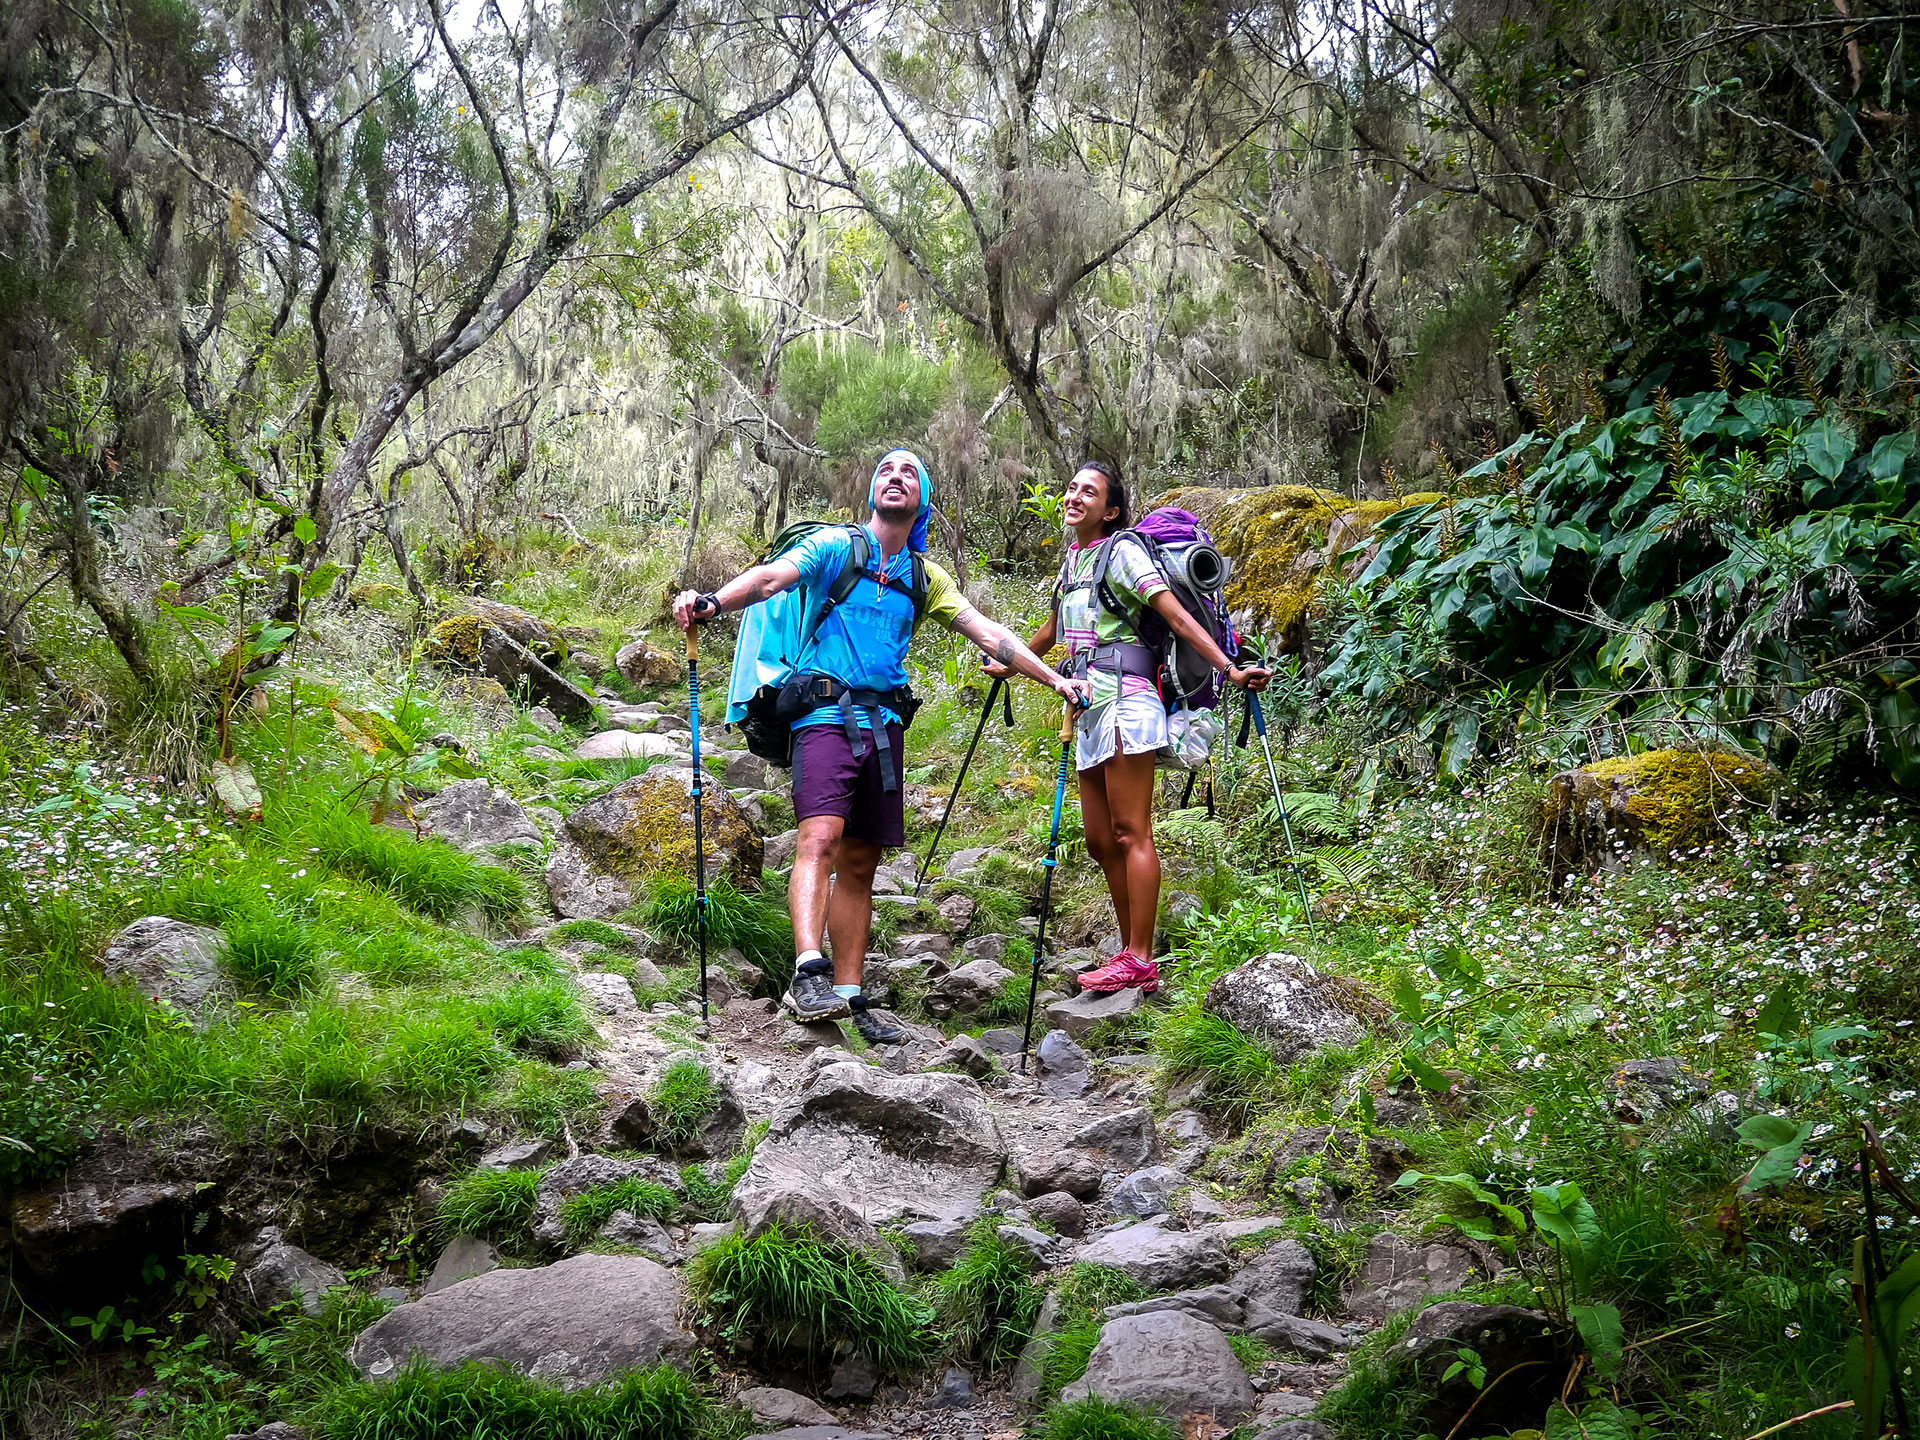 Toutes les infos pour réaliser la randonnée du GRR3 à la Réunion sur notre blog de voyage.